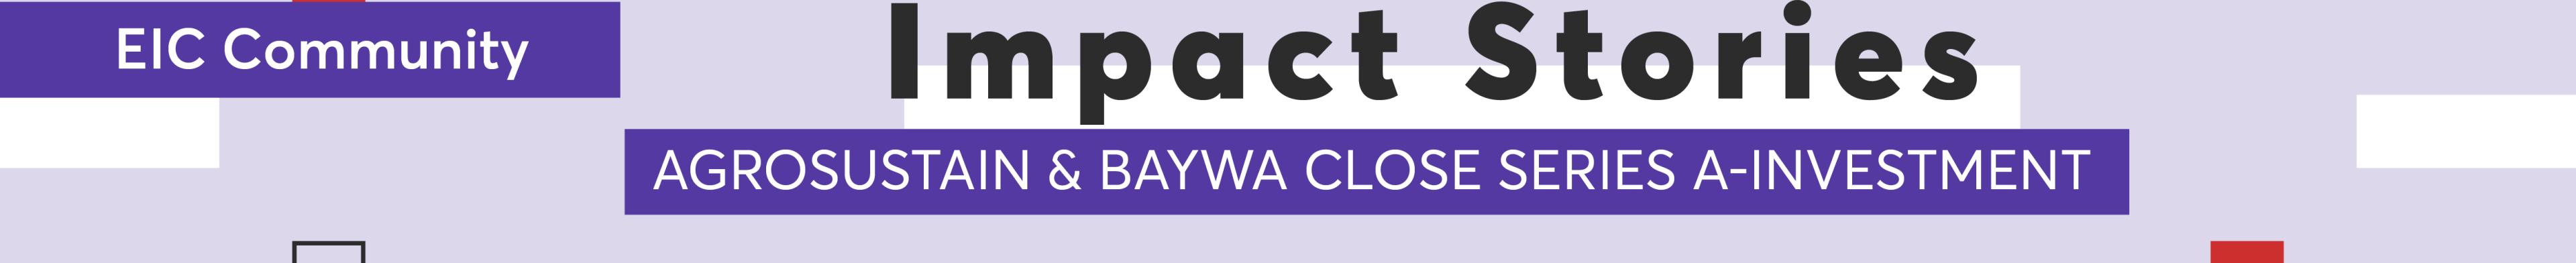 eic_impact_stories_baywa_agrosustain_community_banner.jpg